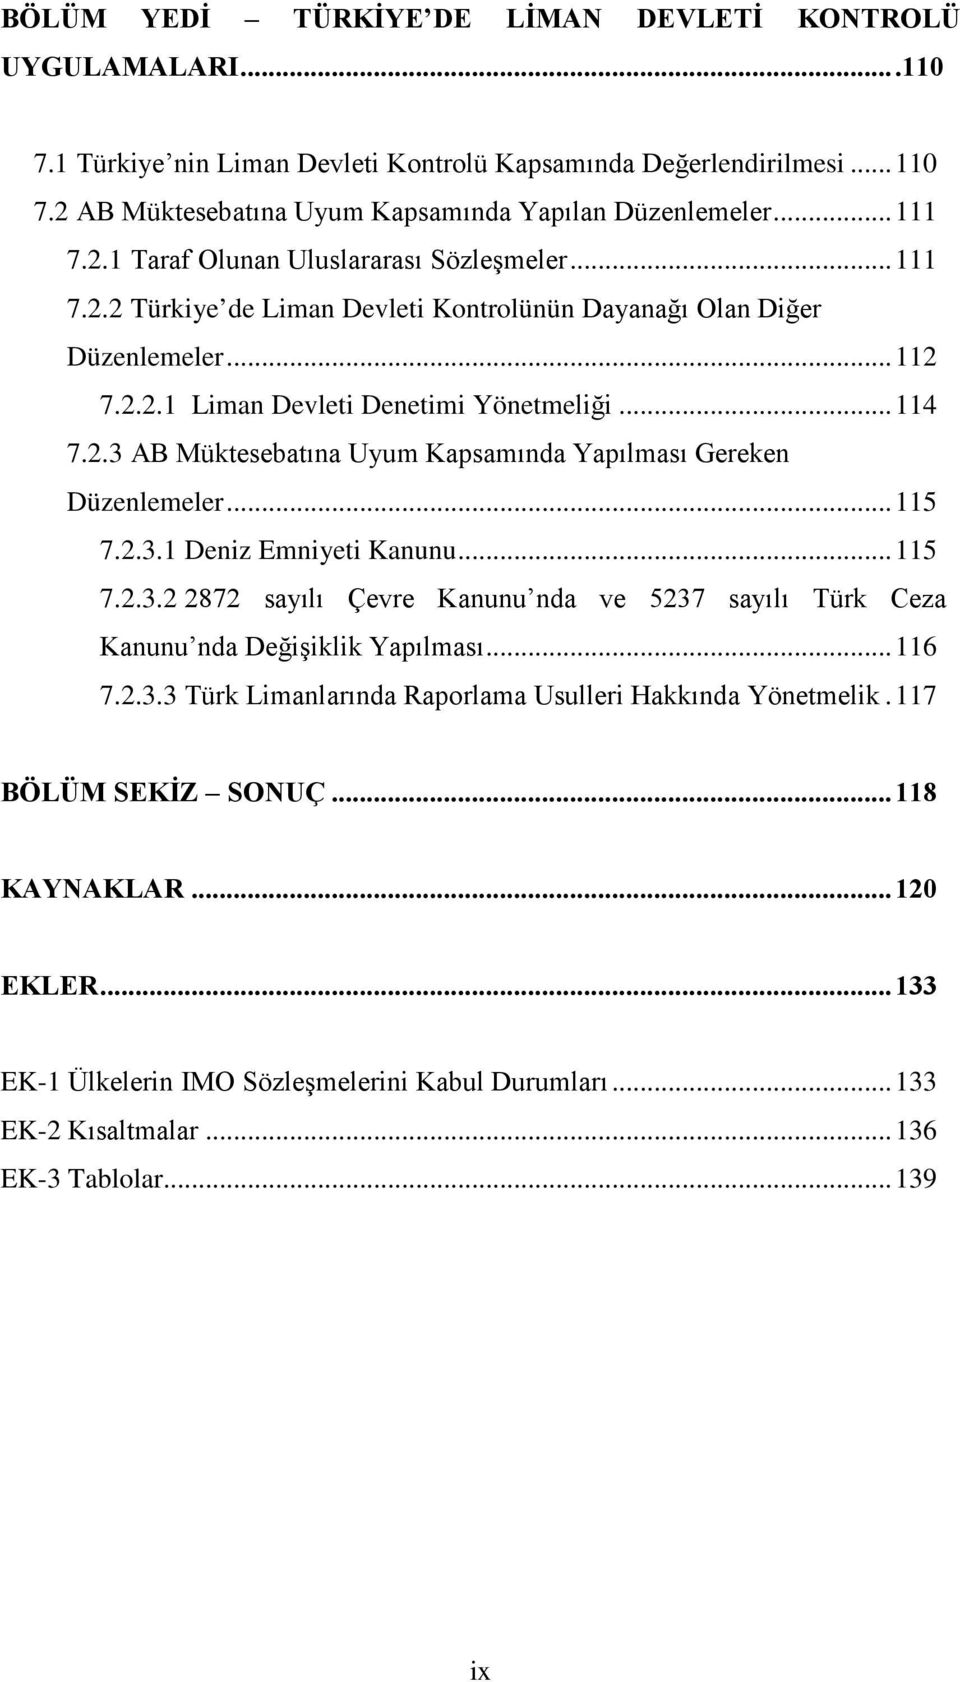 .. 115 7.2.3.1 Deniz Emniyeti Kanunu... 115 7.2.3.2 2872 sayılı Çevre Kanunu nda ve 5237 sayılı Türk Ceza Kanunu nda Değişiklik Yapılması... 116 7.2.3.3 Türk Limanlarında Raporlama Usulleri Hakkında Yönetmelik.